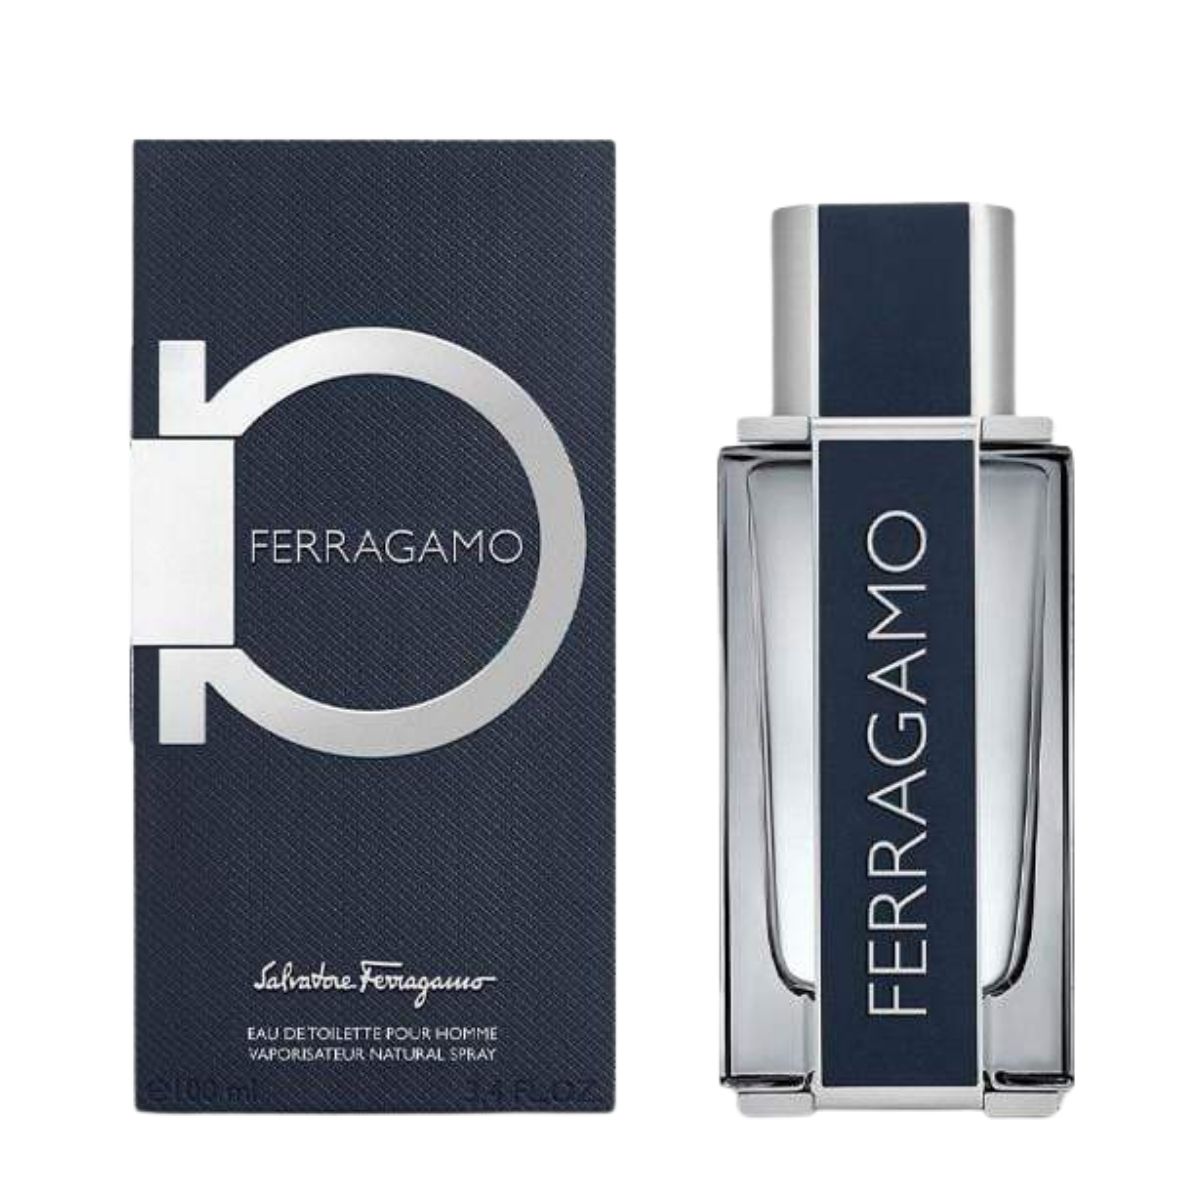 Buy Ferragamo by Salvatore Ferragamo for Men EDT 100mL | Arablly.com